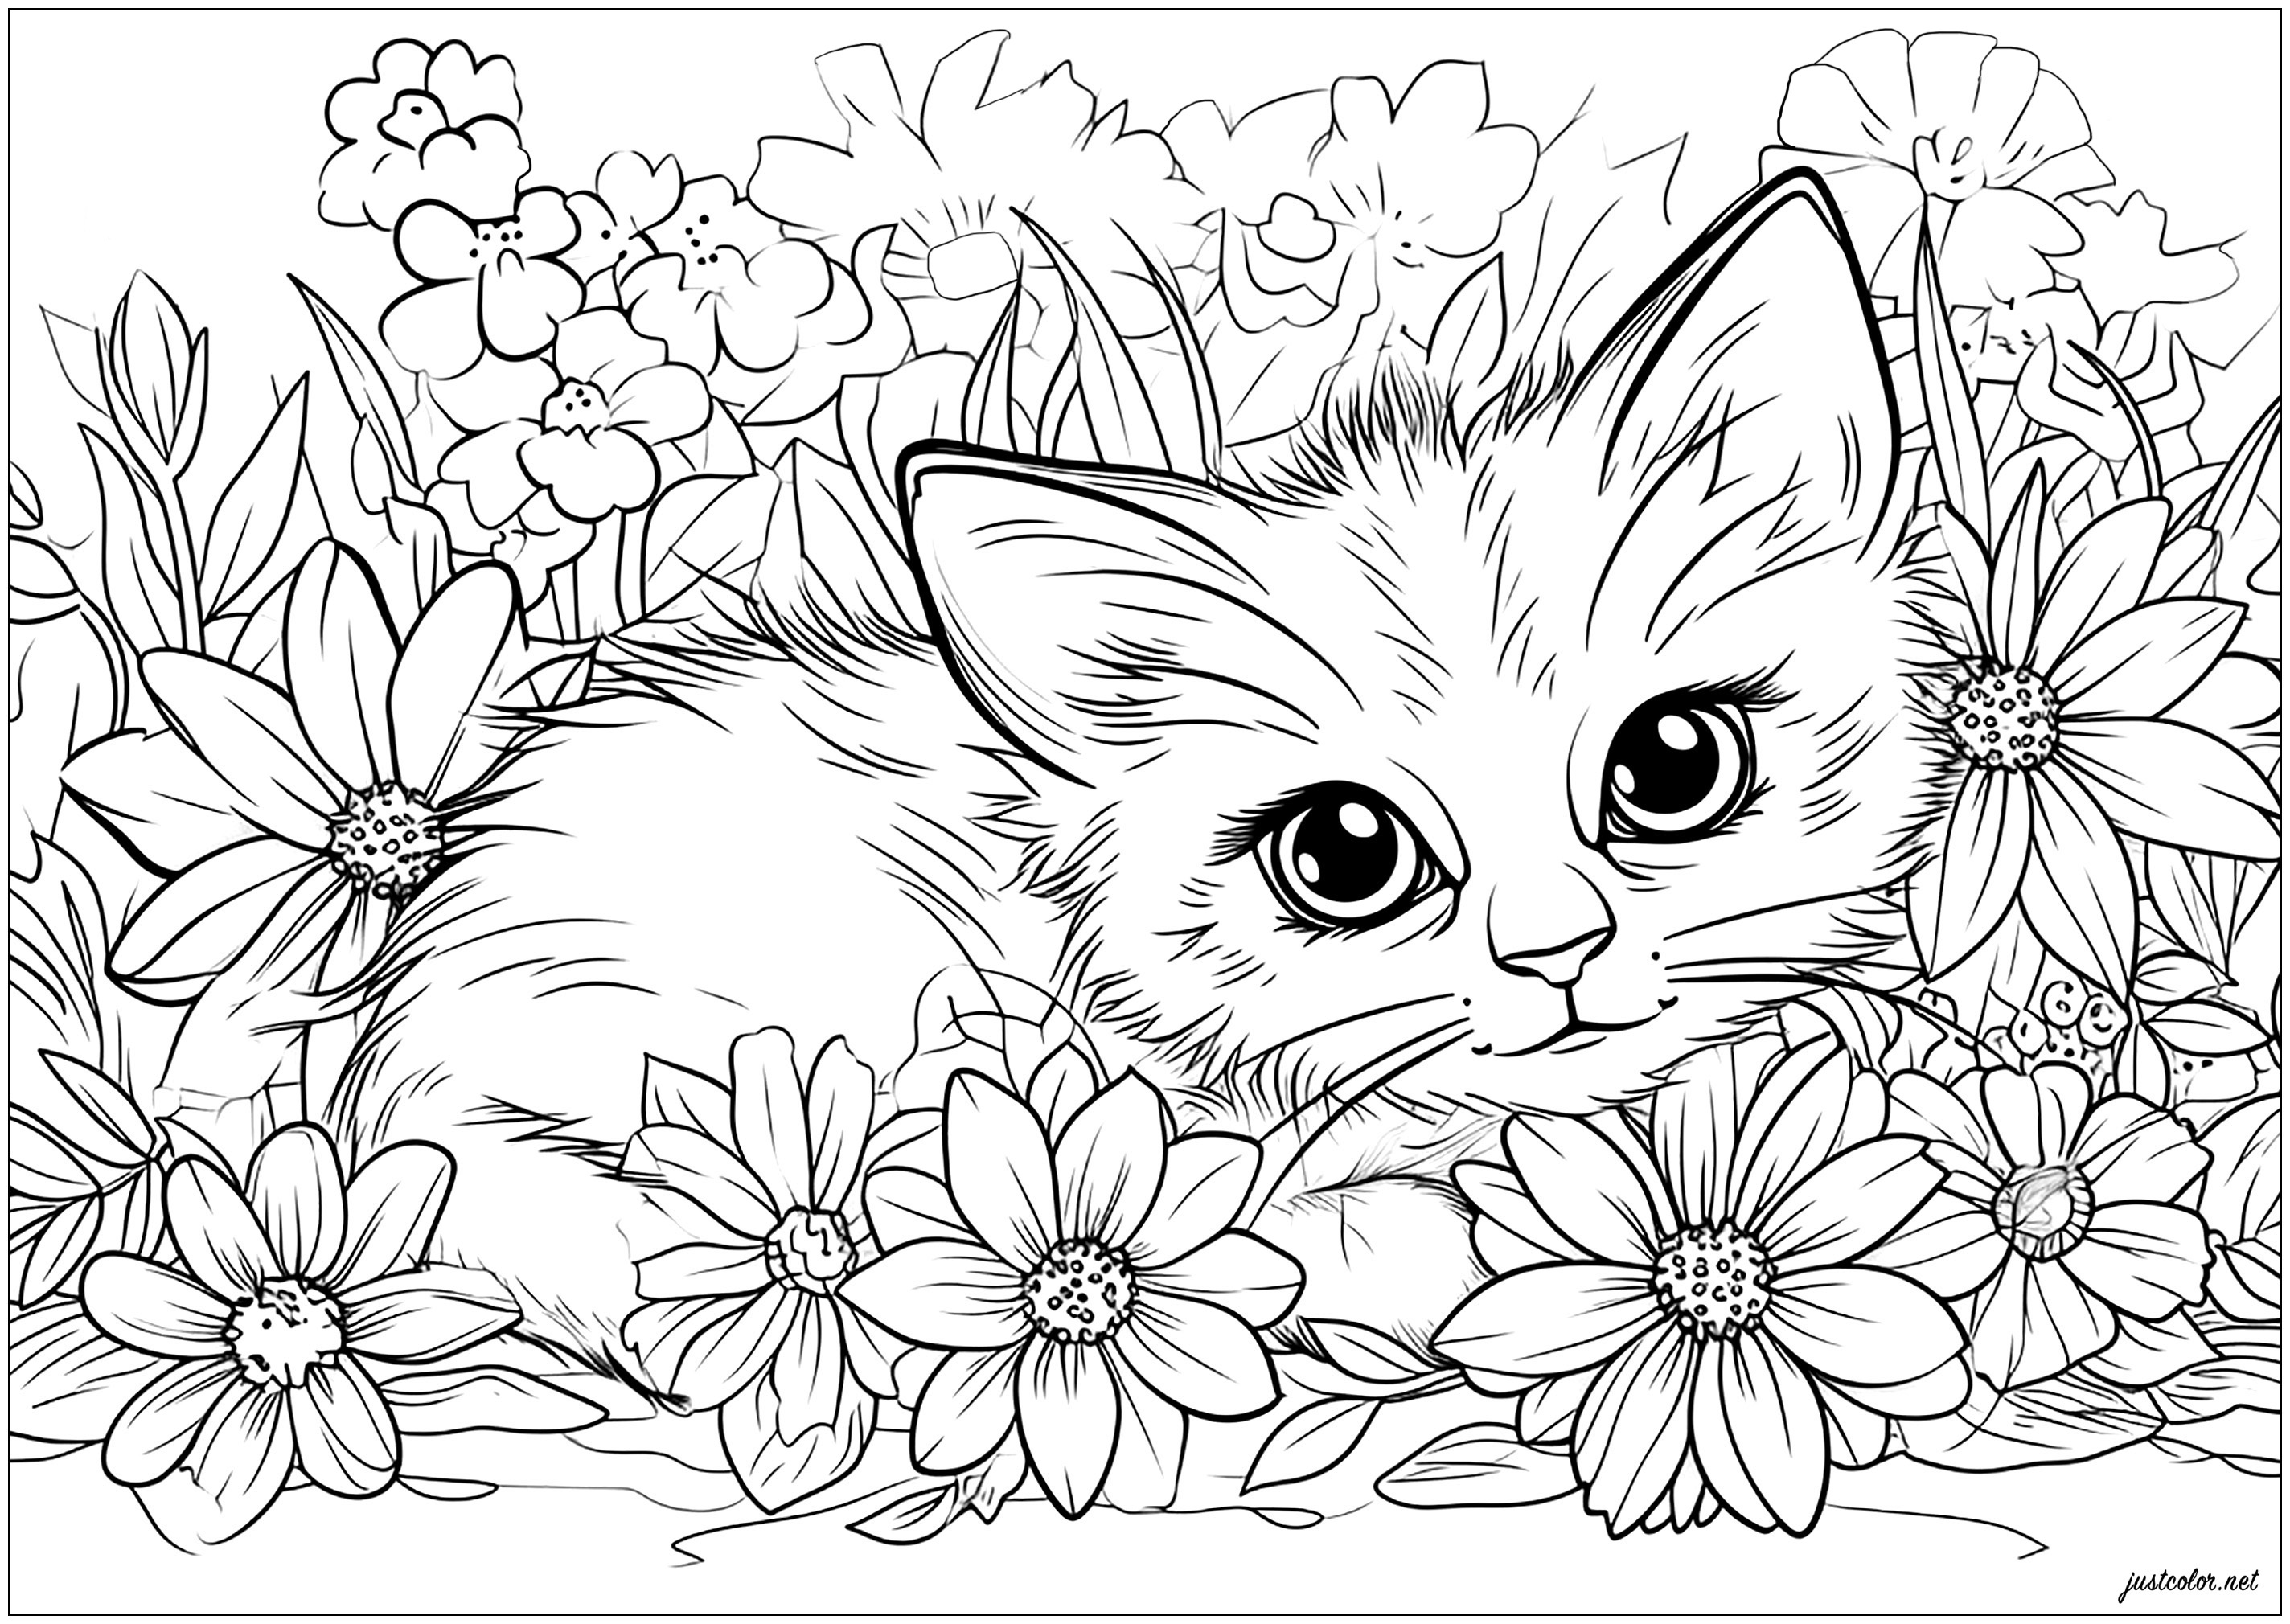 Página para colorir : Gatos - 5